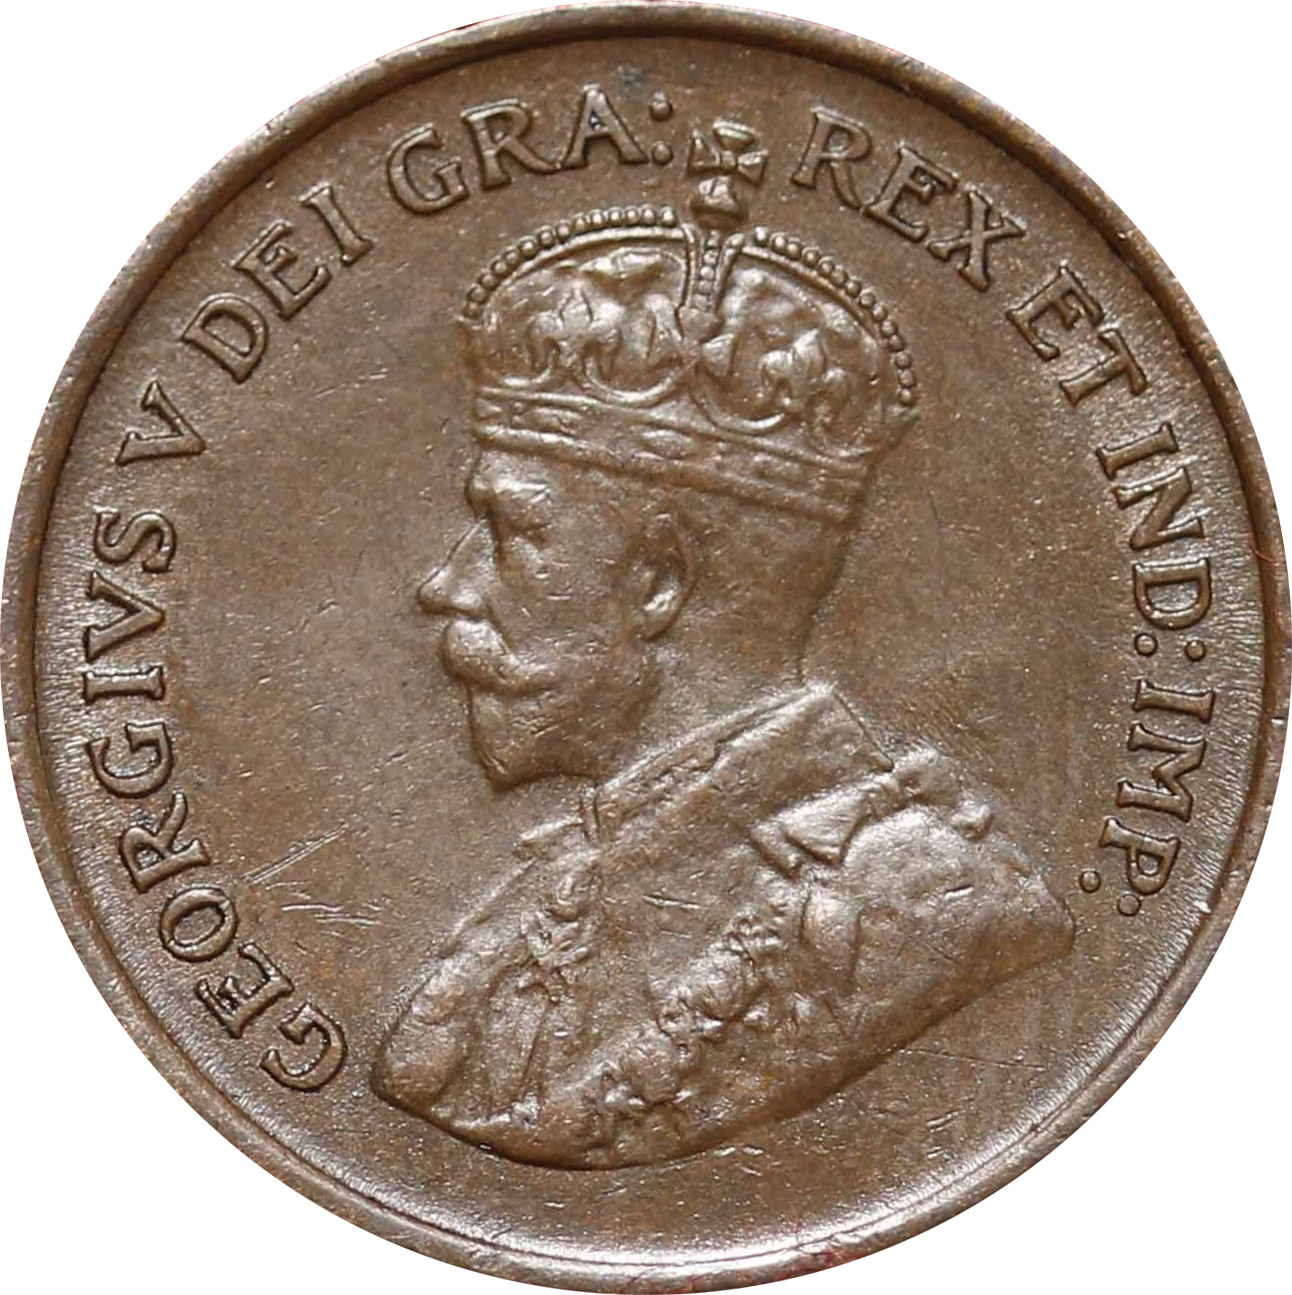 EF-40 - 1 cent 1920 to 1936 - George V